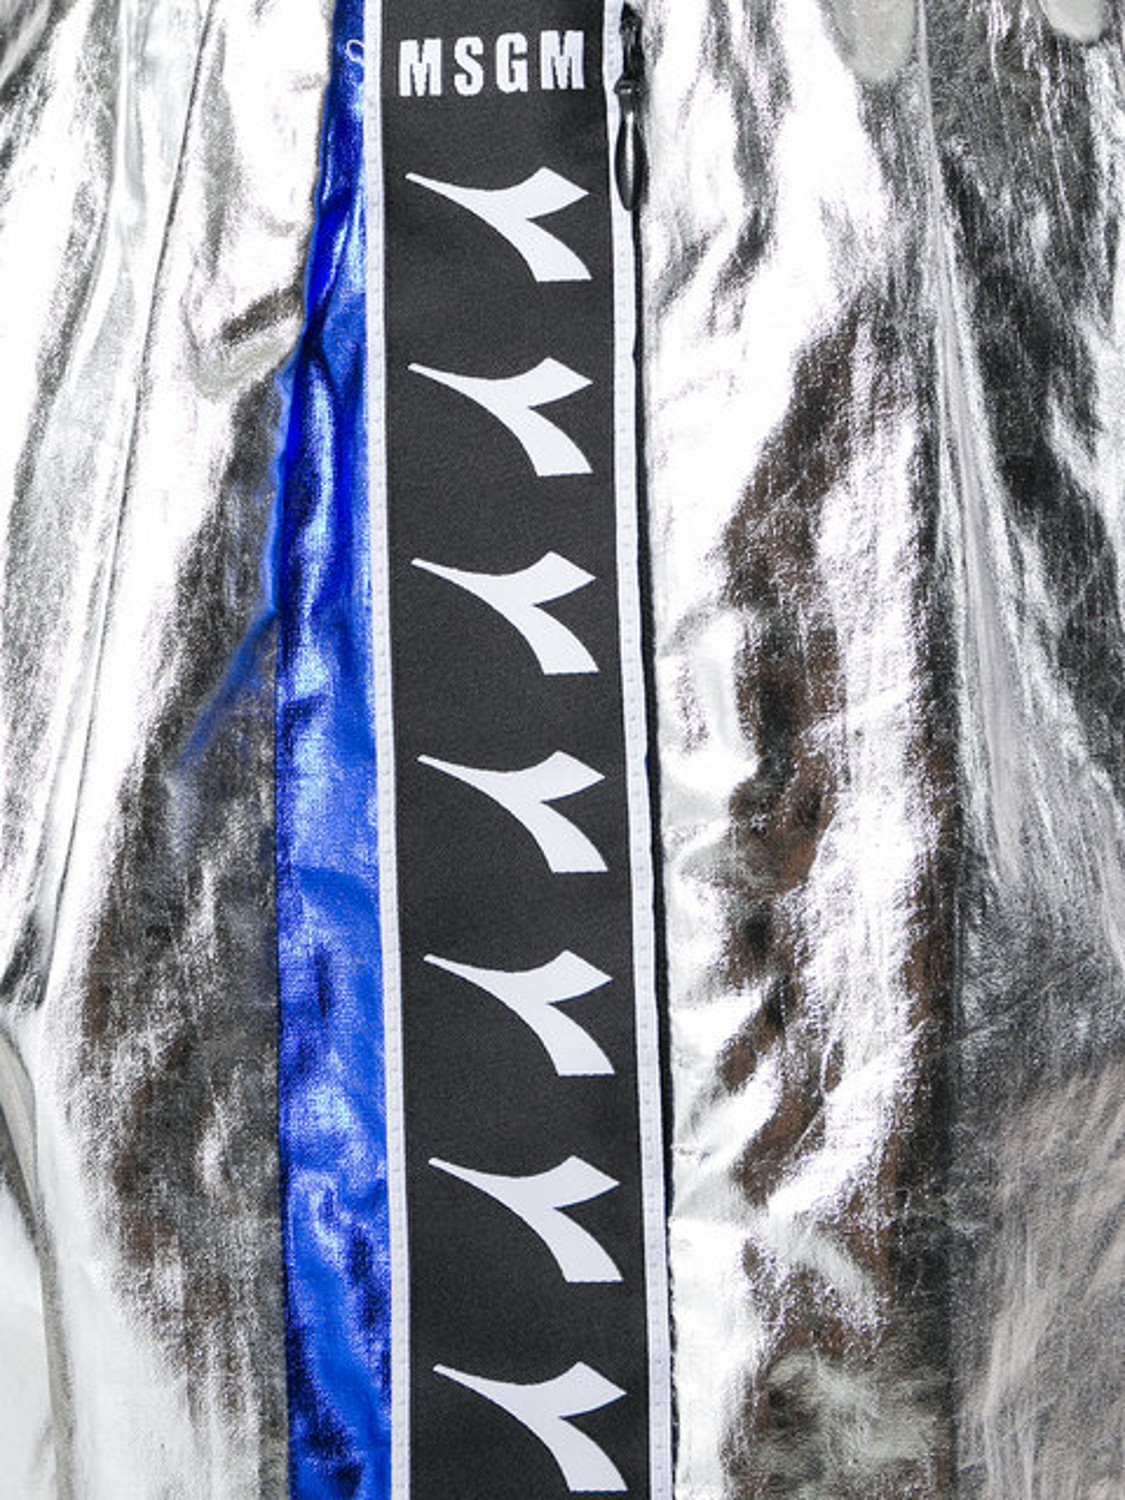 shop MSGM Saldi Pantaloni: Pantaloncino MSGM in collaborazione con Diadora, color argento con bande laterali in blu e nero, tasche laterali con zip.

Composizione: 80% cotone, 20% poliuretano. number 1247